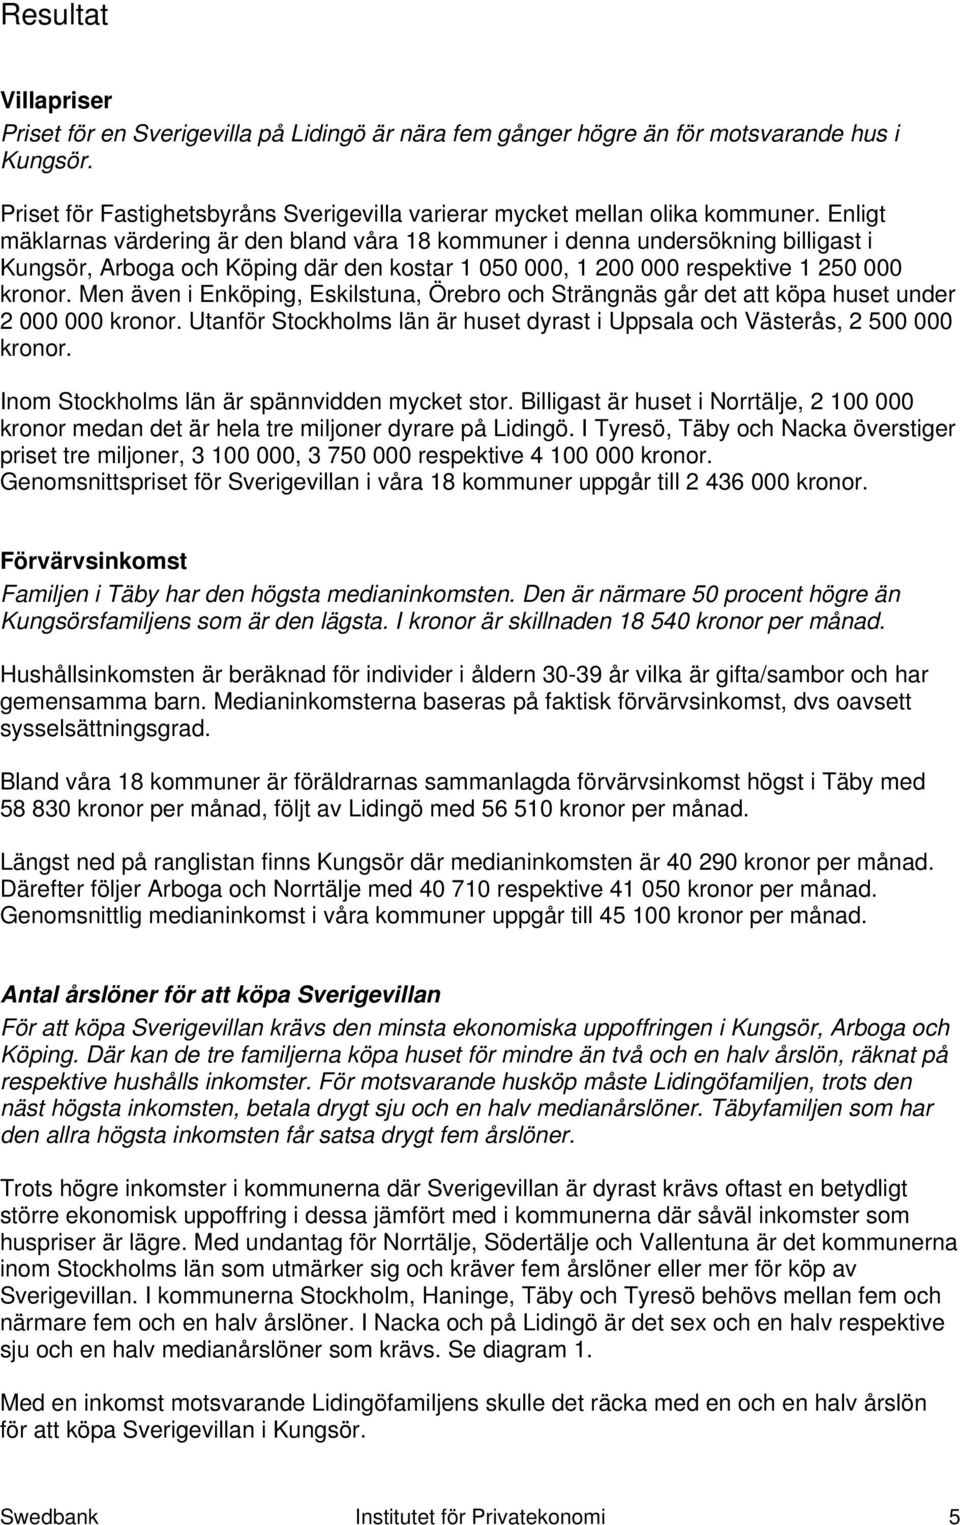 Men även i Enköping, Eskilstuna, Örebro och Strängnäs går det att köpa huset under 2 000 000 kronor. Utanför Stockholms län är huset dyrast i Uppsala och Västerås, 2 500 000 kronor.